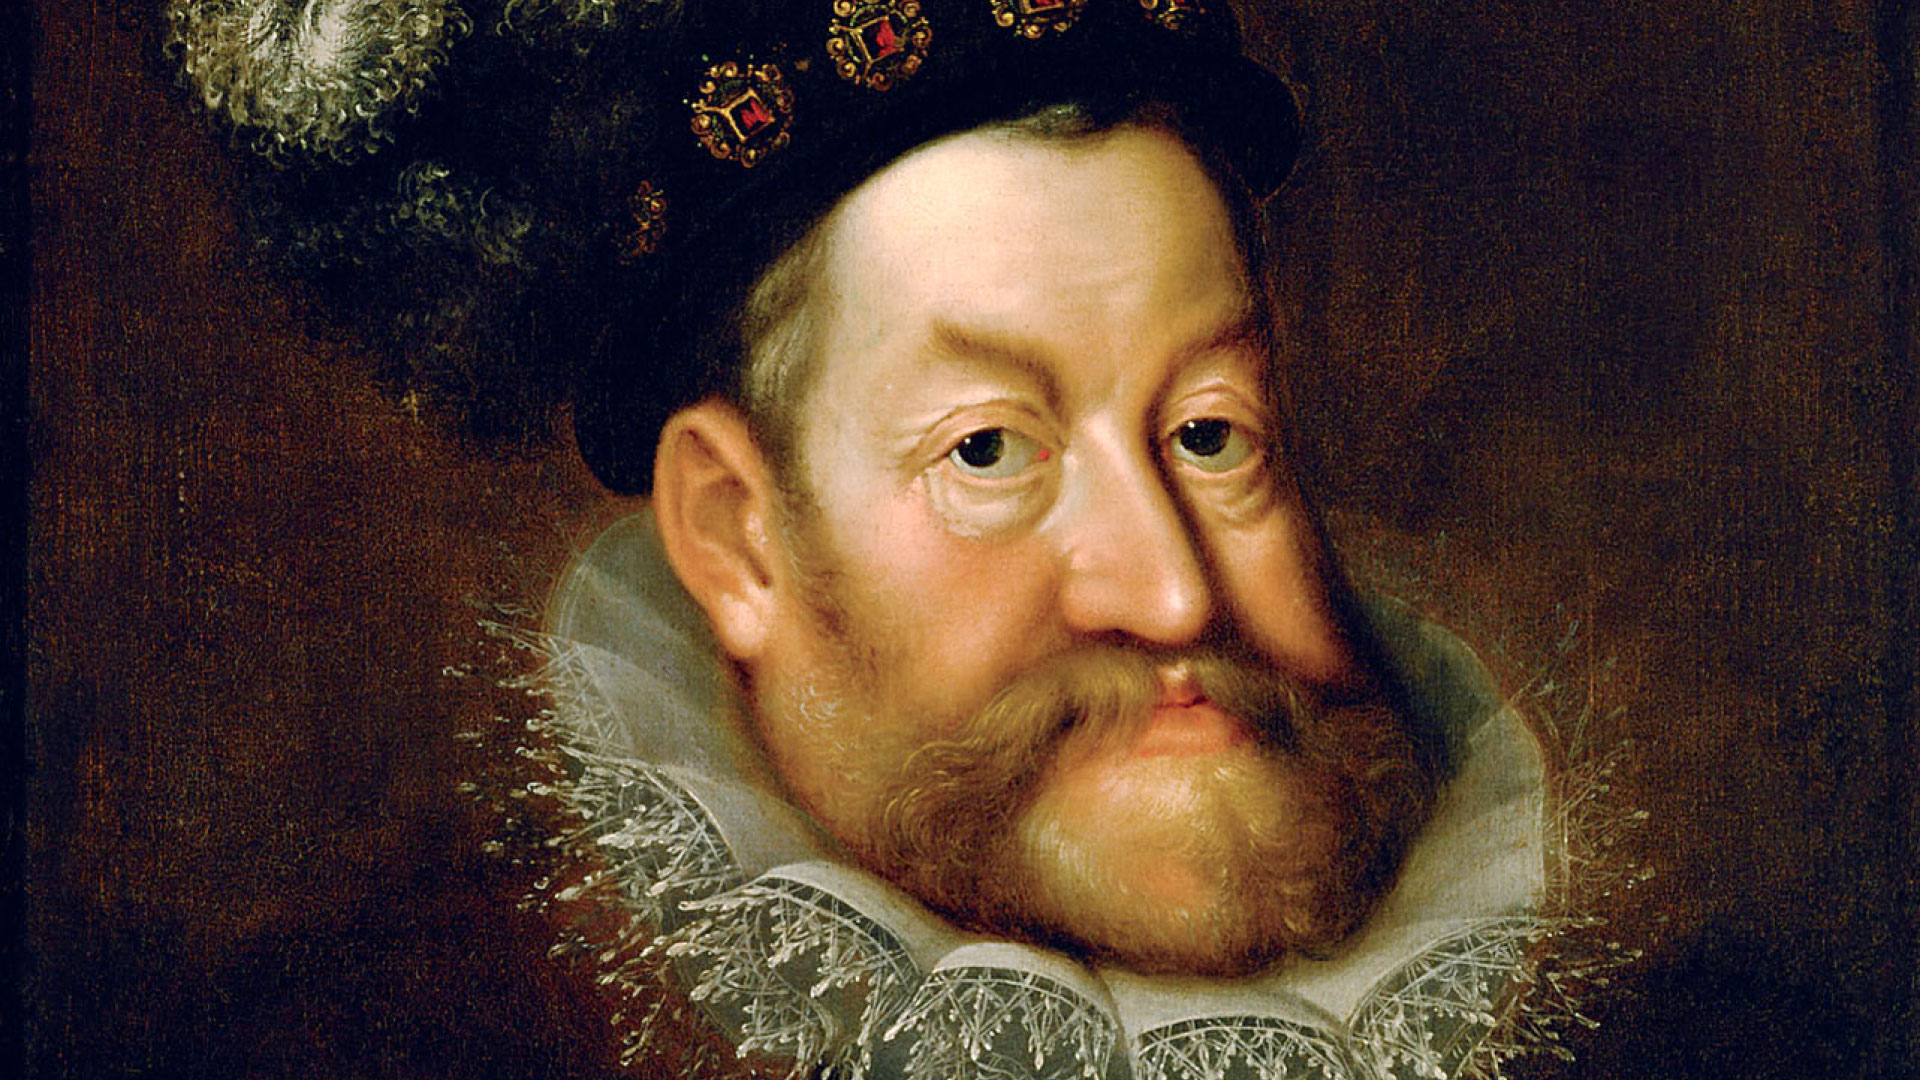 V jeho jednání nebylo nic z velkopanského vystupování, zaznamenal benátský vyslanec o císaři Rudolfu II. Přestože byl schopným politikem i velkým mecenášem